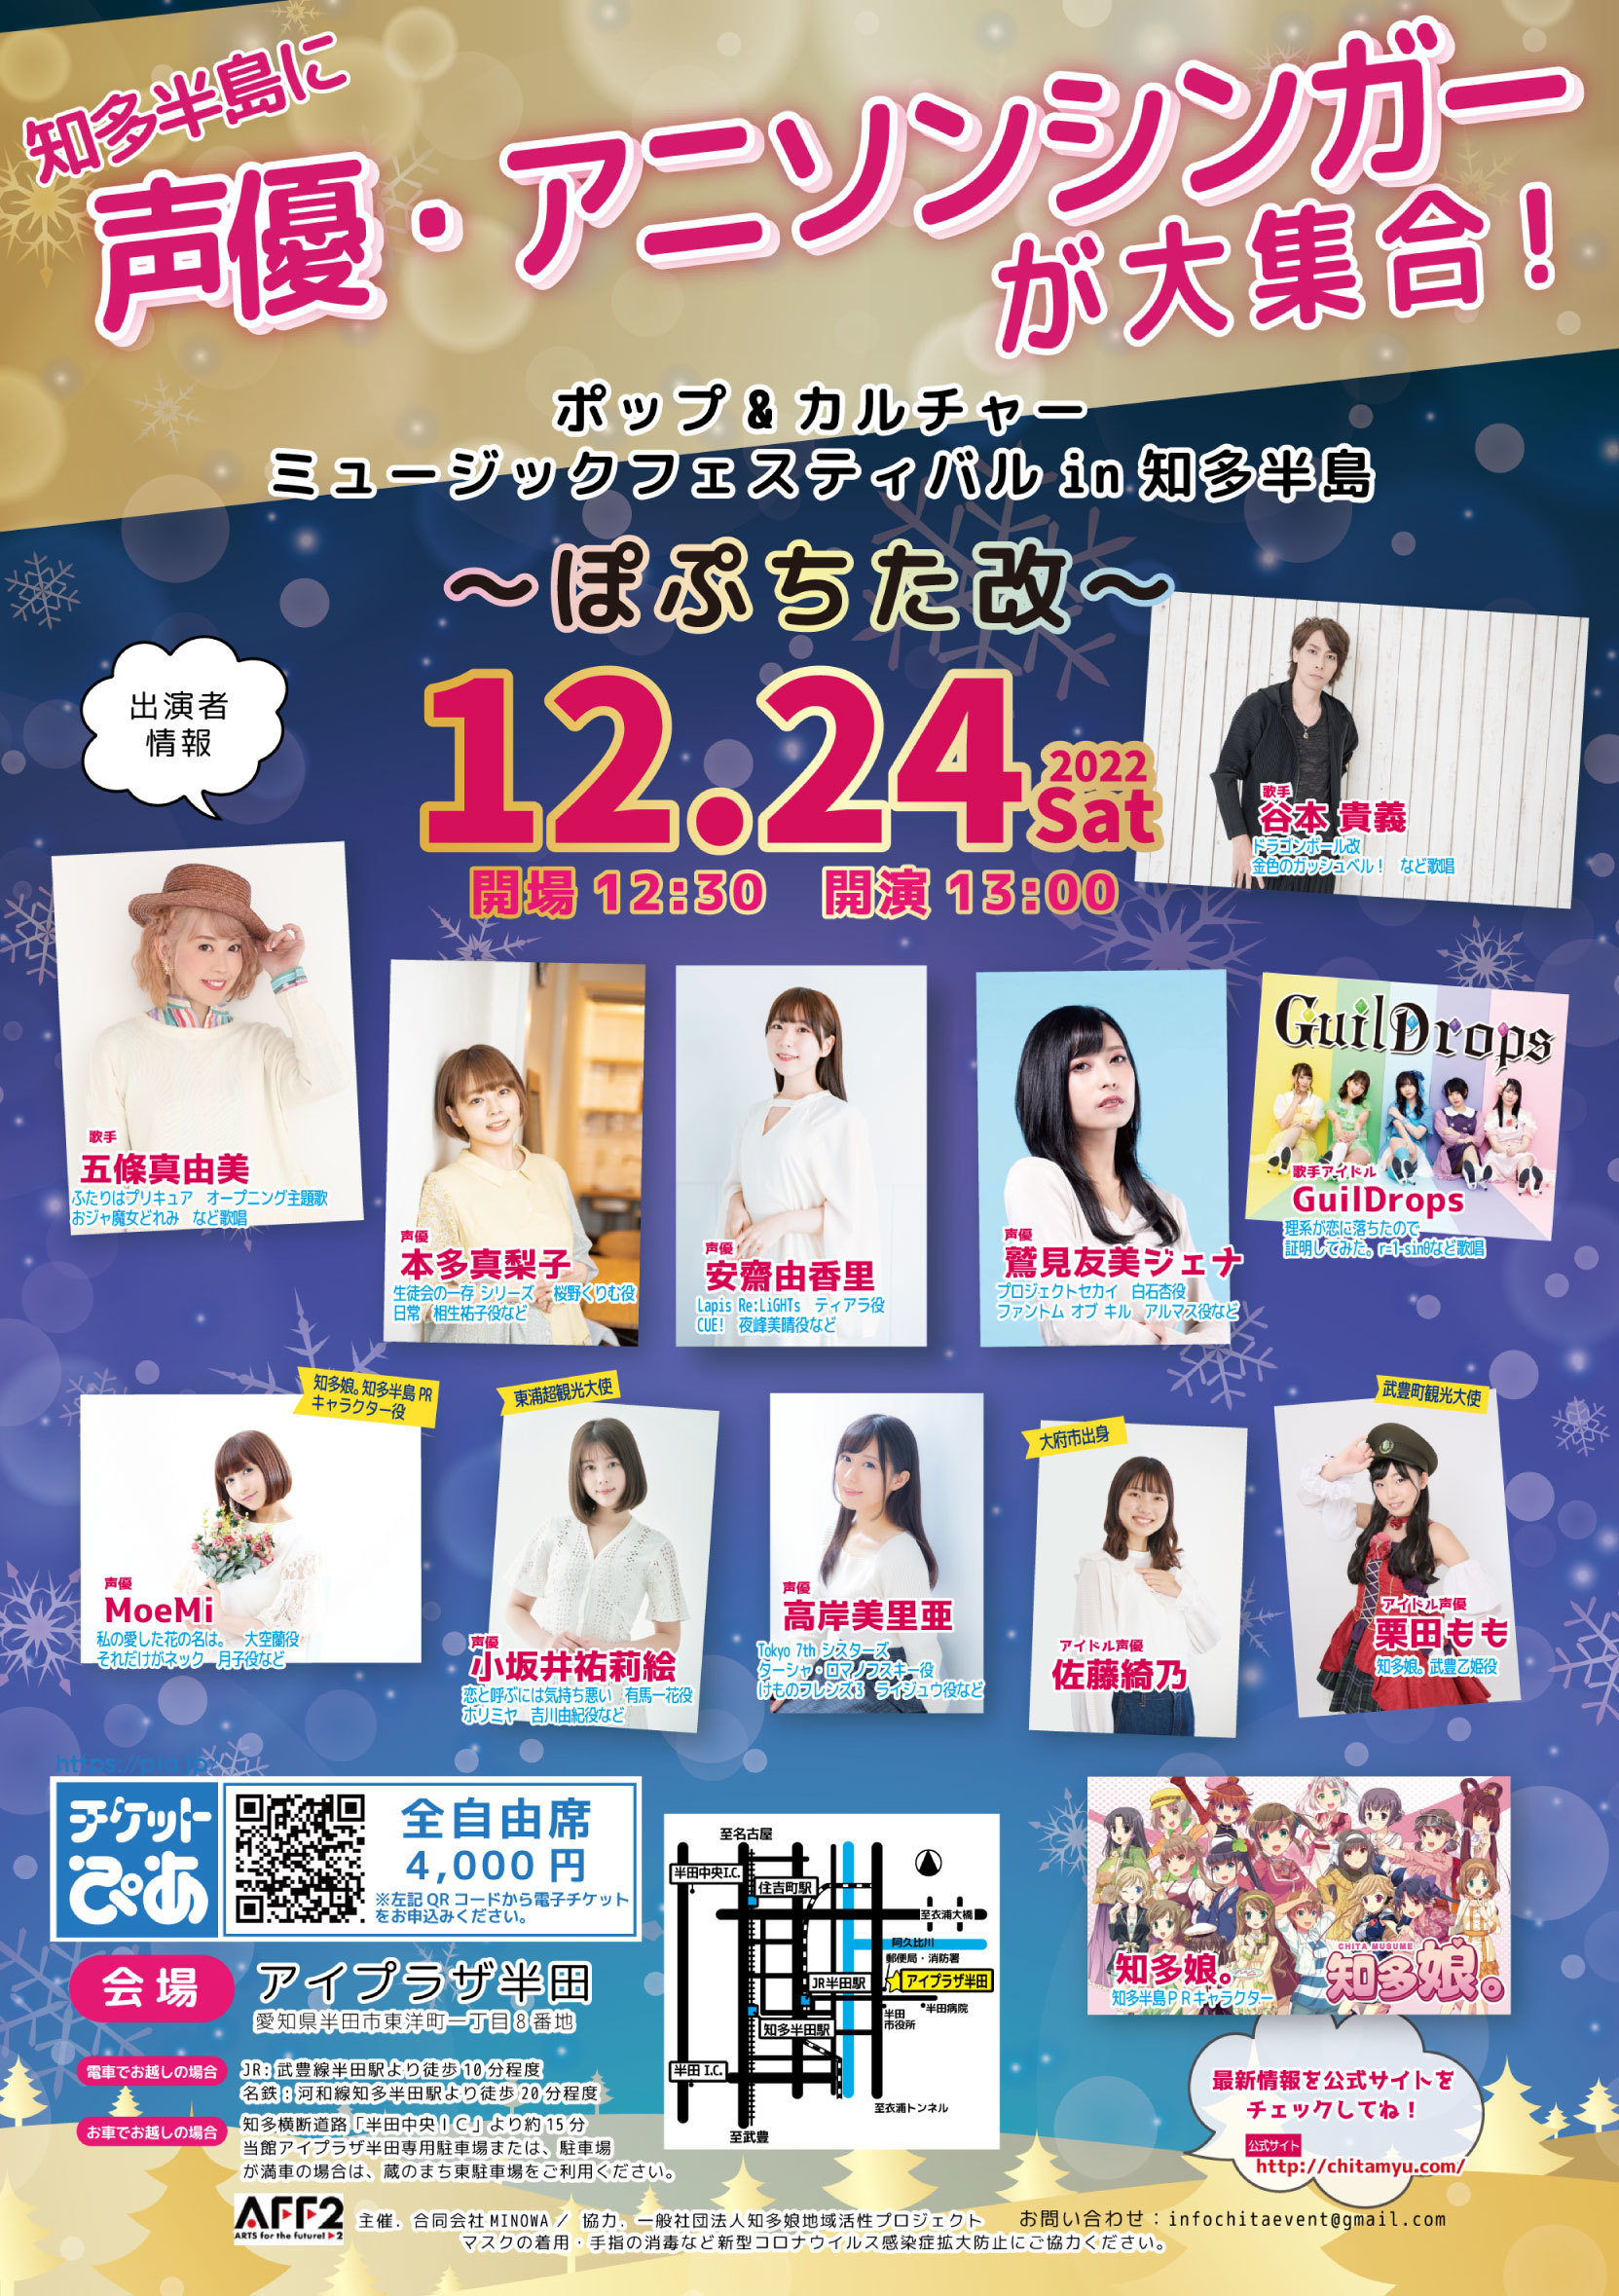 愛知県・知多半島にて声優、アニソンシンガー、
アイドルなどによるミュージックイベントを
12月24日のクリスマスイブに開催